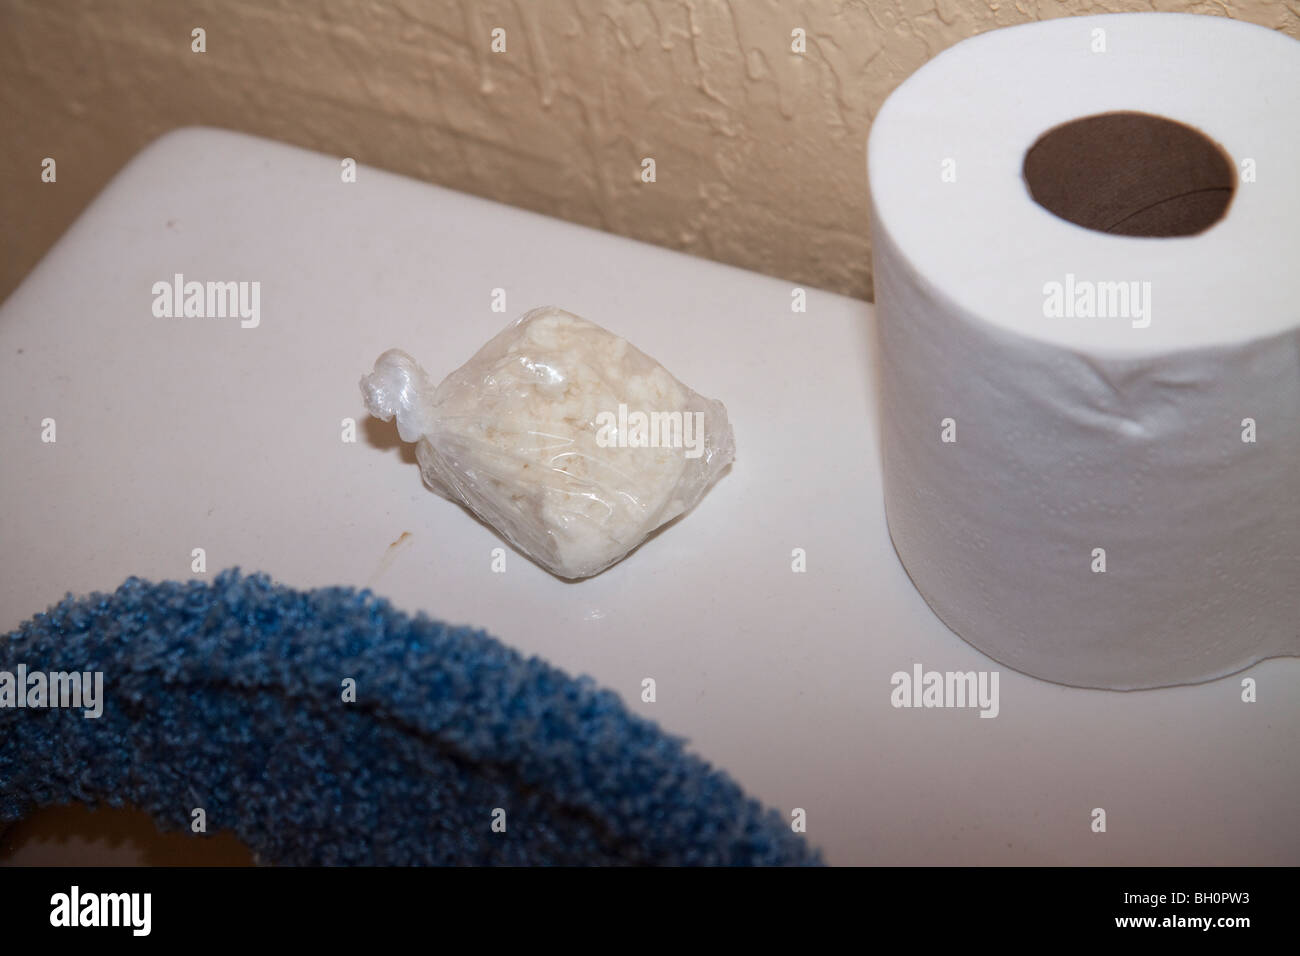 Betäubungsmittel im Bad gefunden. Drogen im Zusammenhang mit Durchsuchungsbefehl. Crack-Kokain. Stockfoto